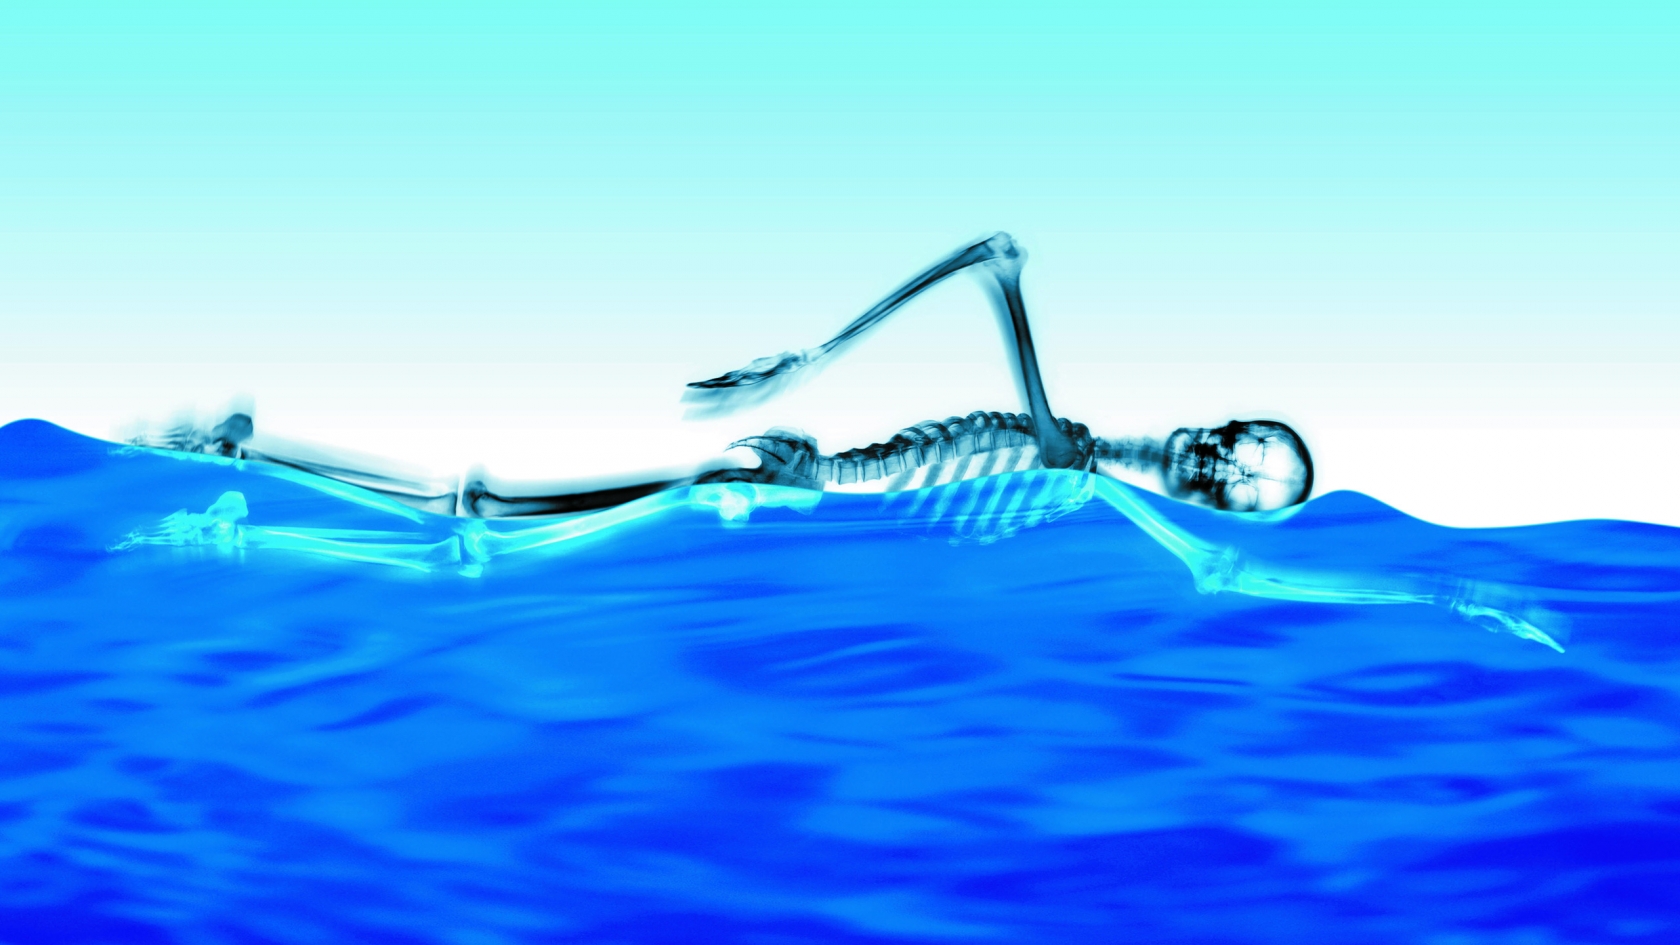 Swimming Skeleton for 1680 x 945 HDTV resolution